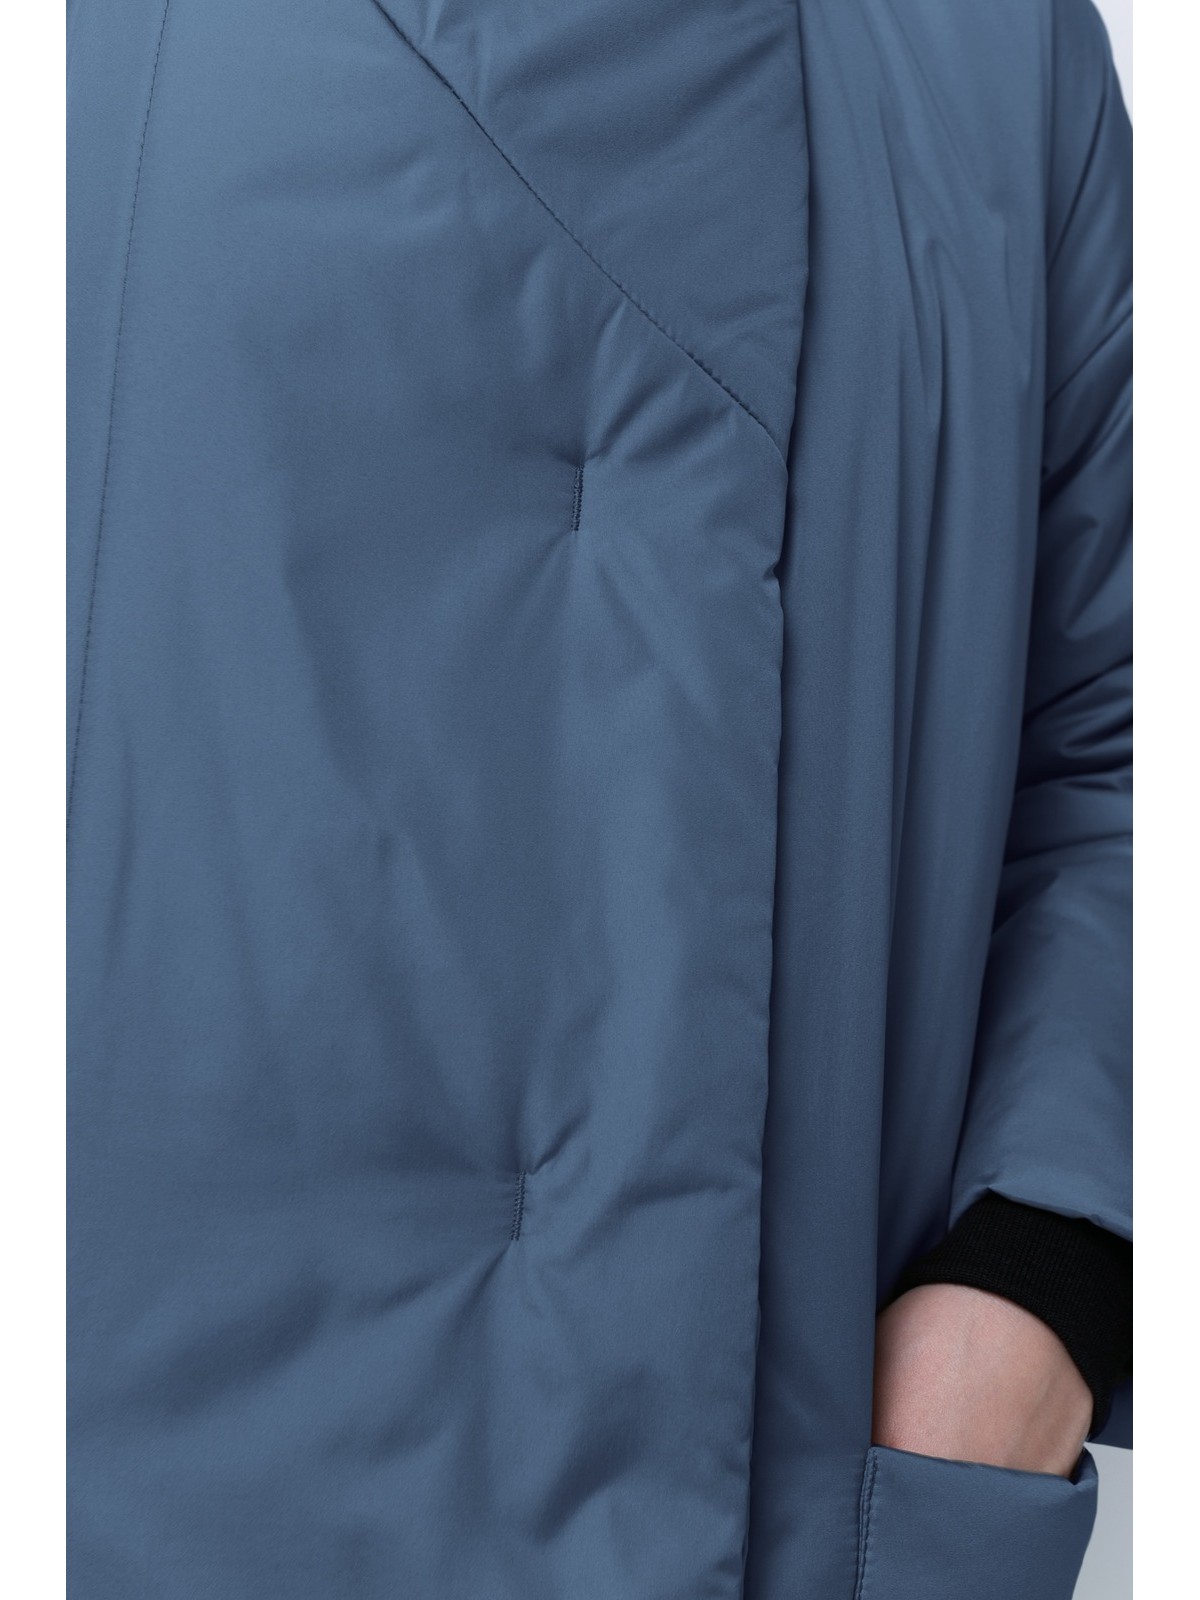 Пуховик-одеяло с английским воротником (манжет) 122см Grey blue